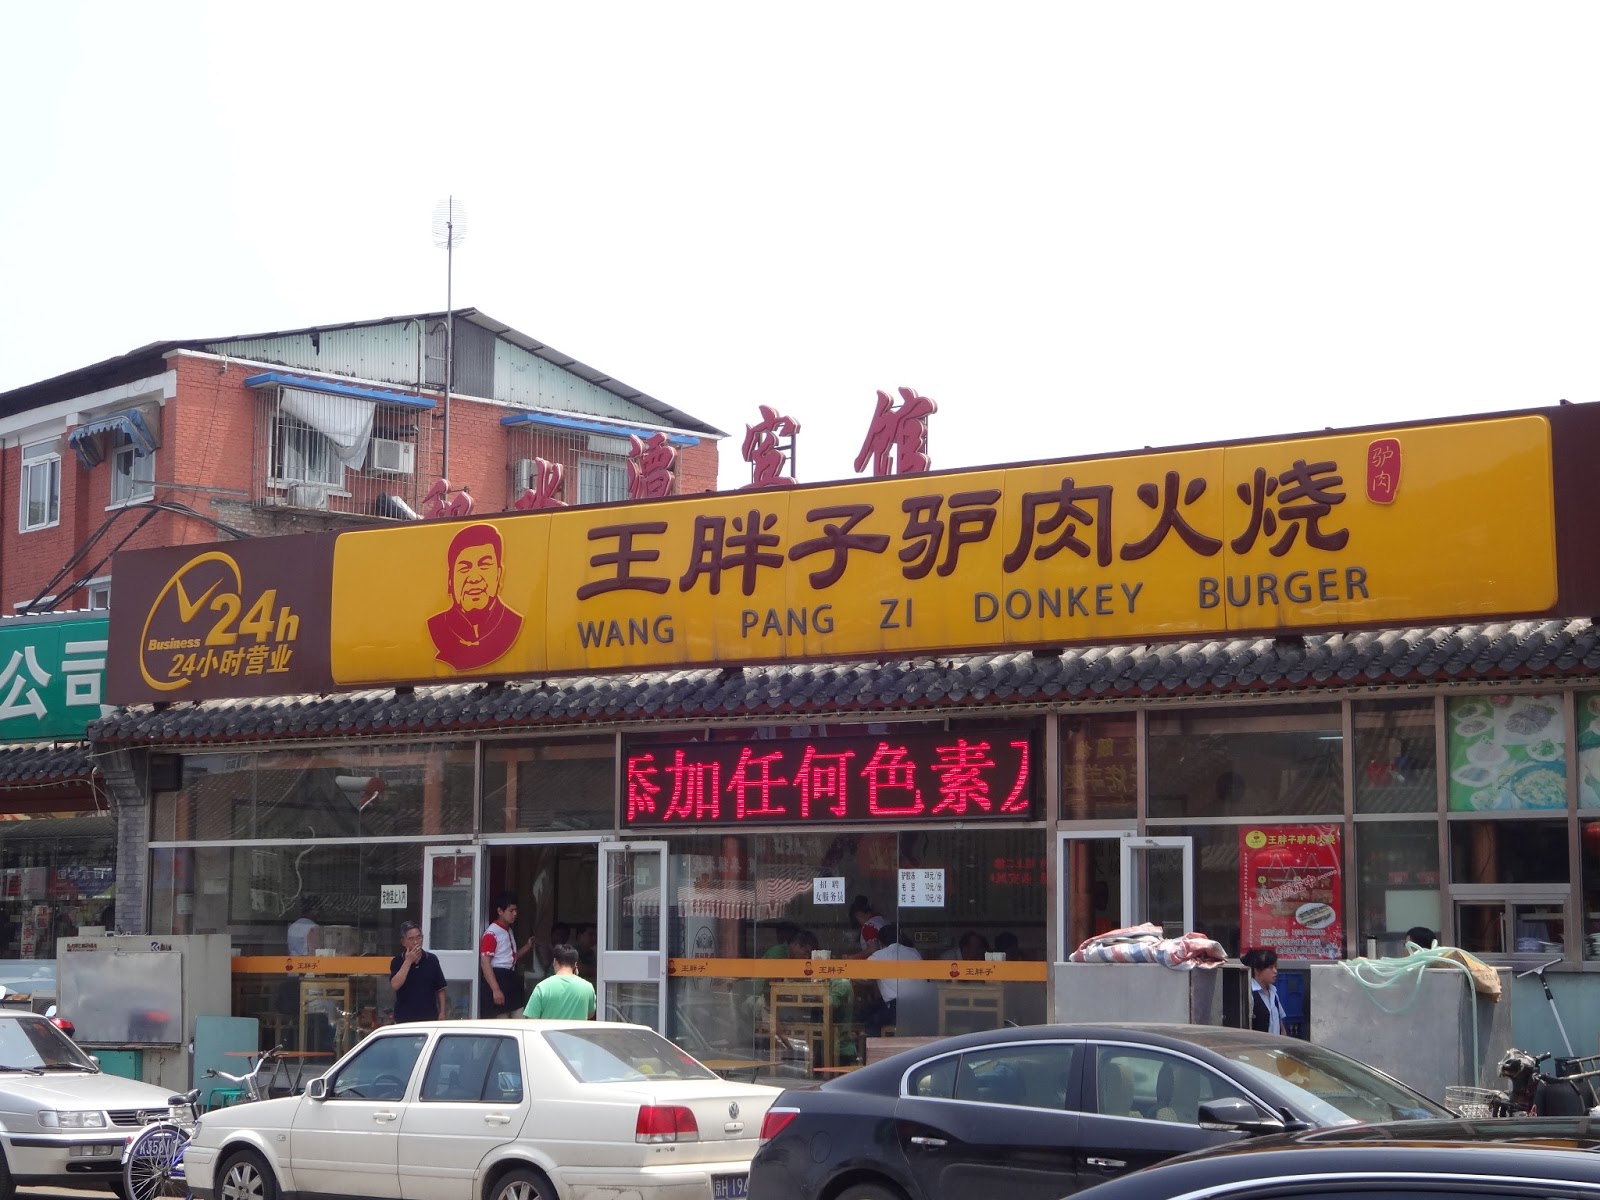 مطعم لحم الحمير فى الصين